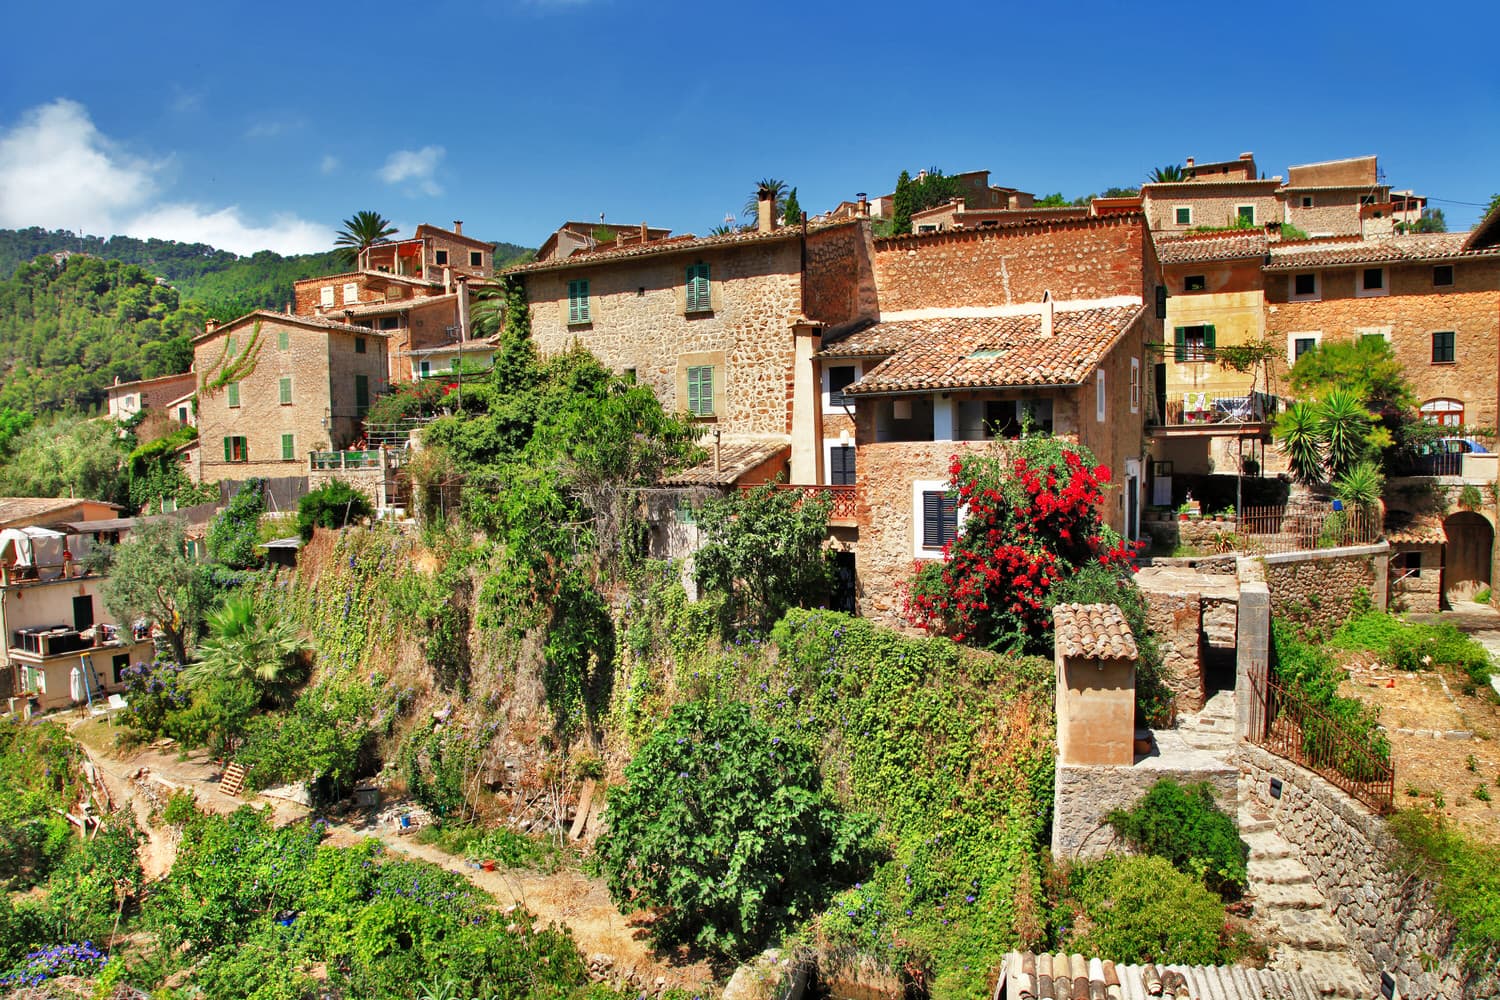 Immobilie auf Mallorca kaufen - Darauf sollten Sie achten